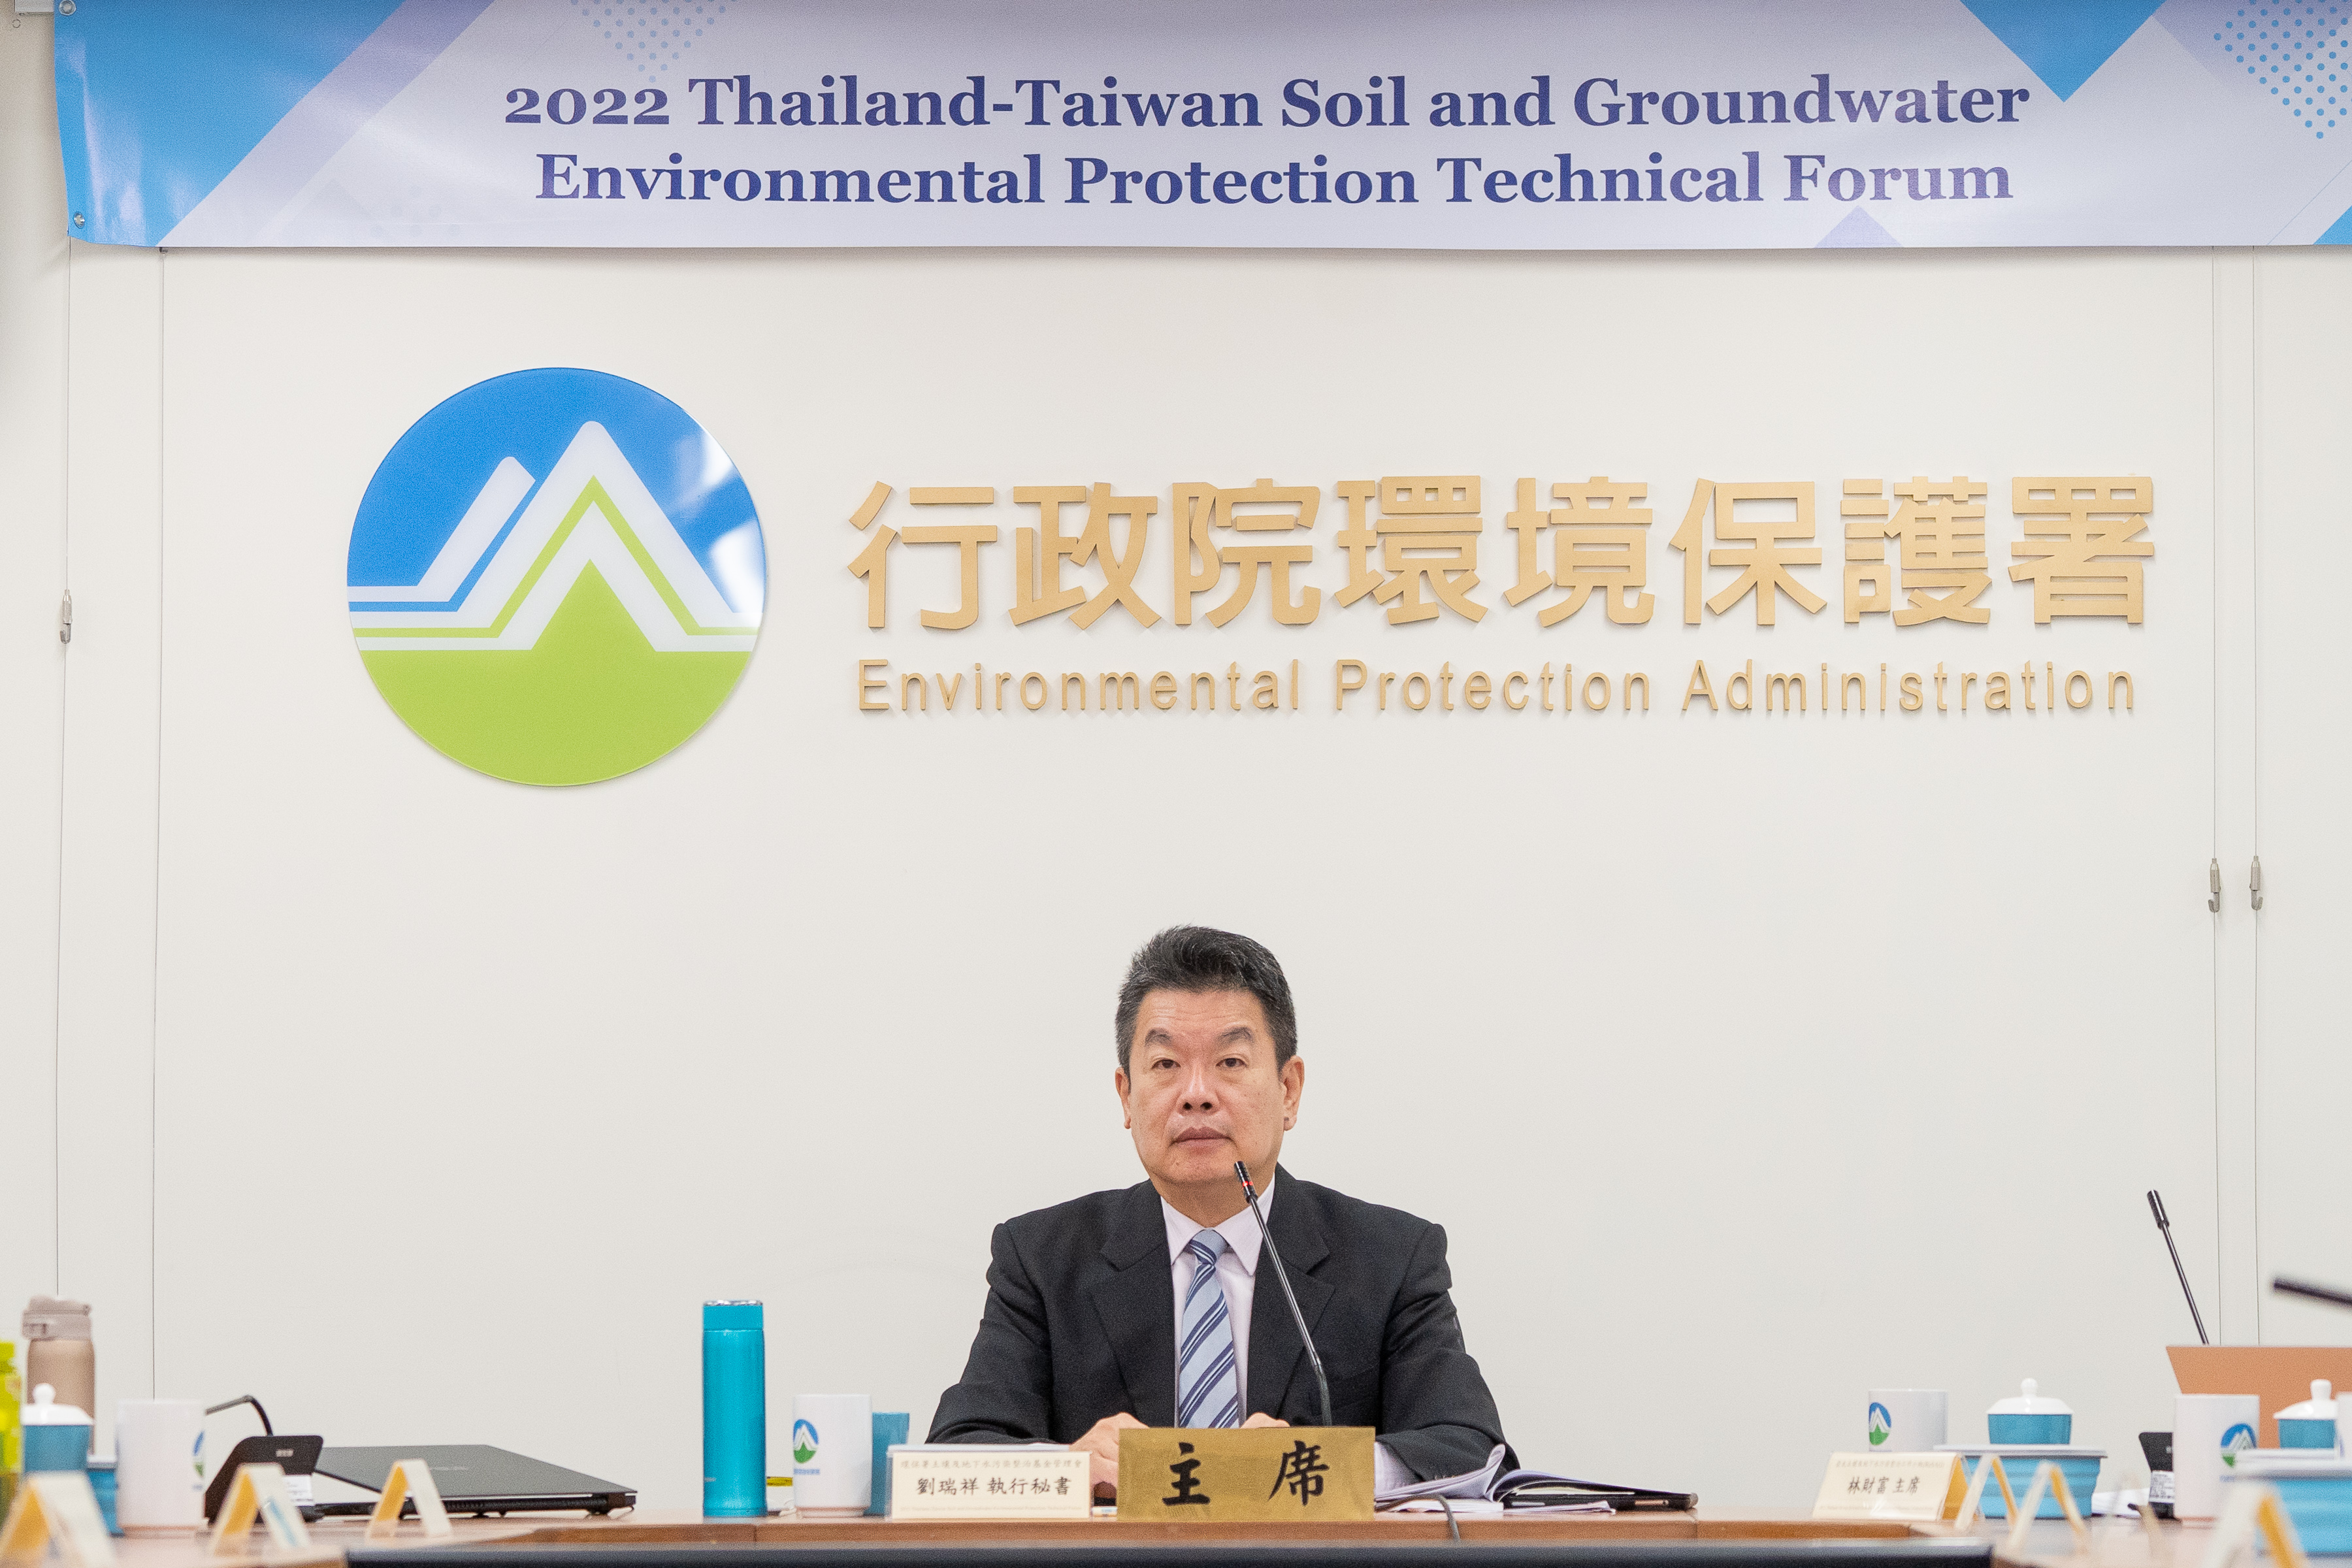 劉瑞祥執行秘書於2022泰臺土壤及地下水環境保護技術論壇致詞